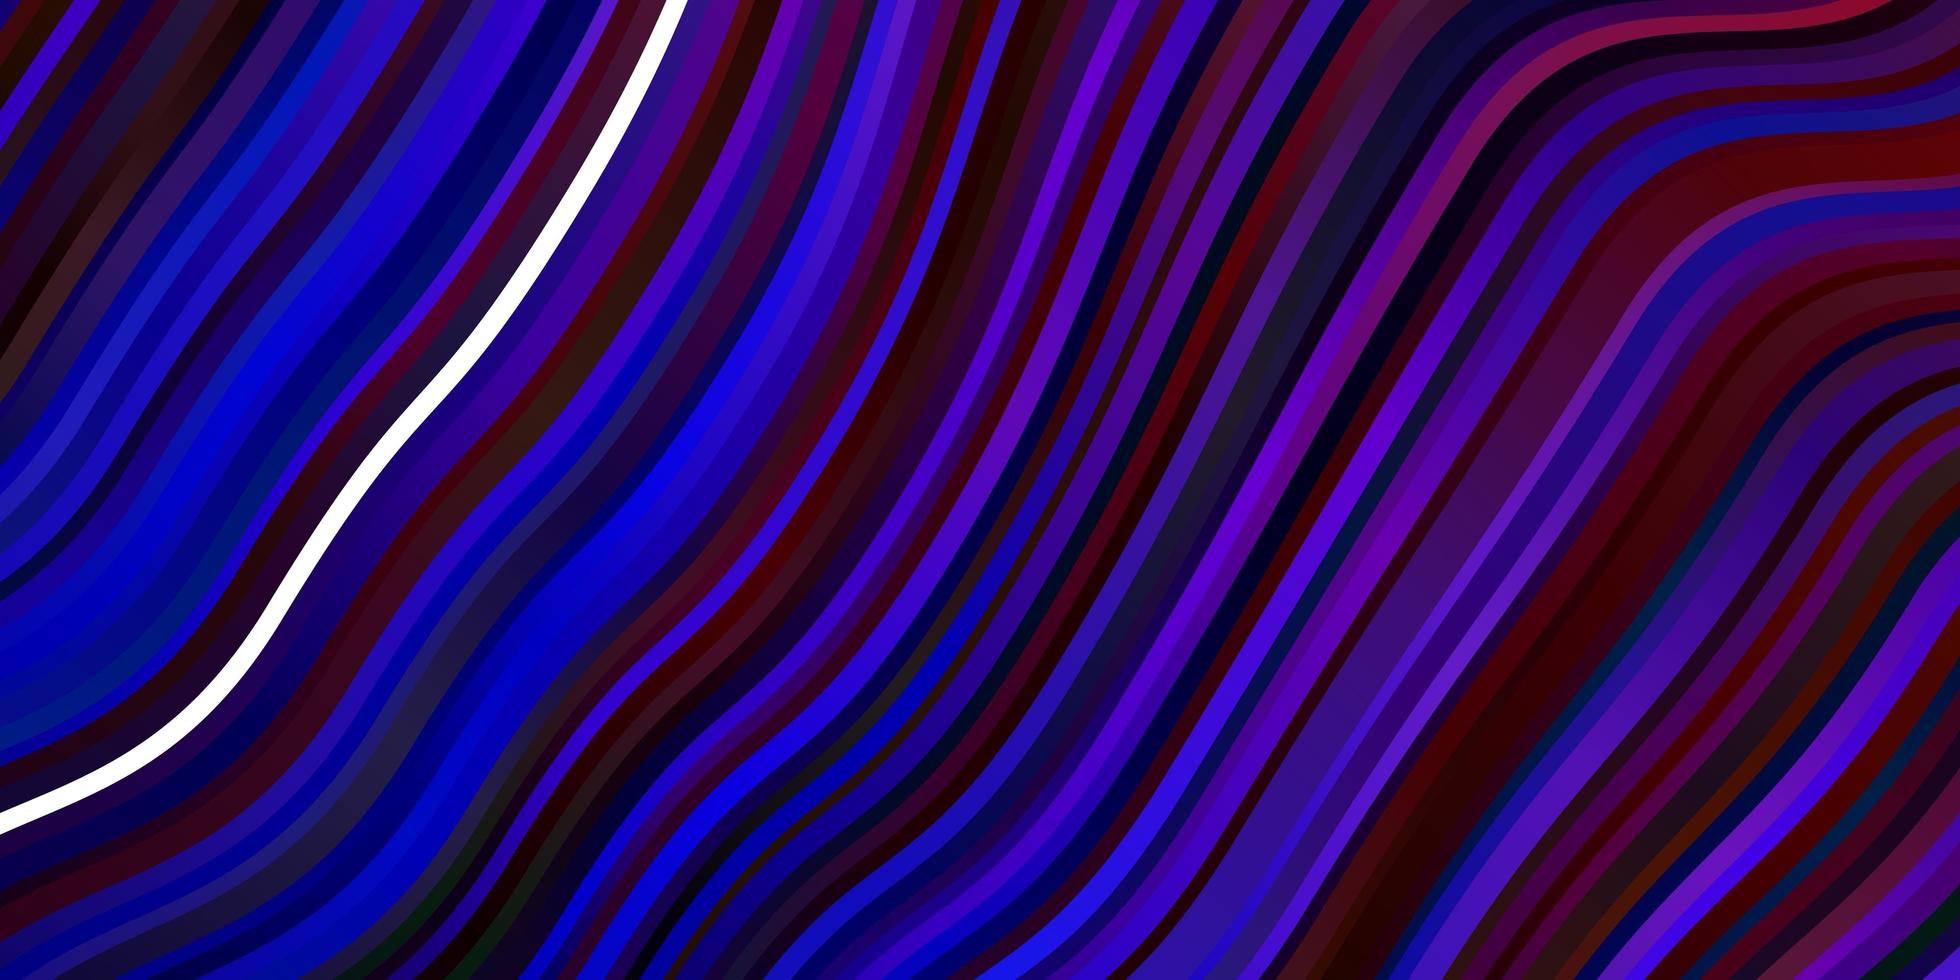 textura vector azul e vermelho claro com linhas irônicas.